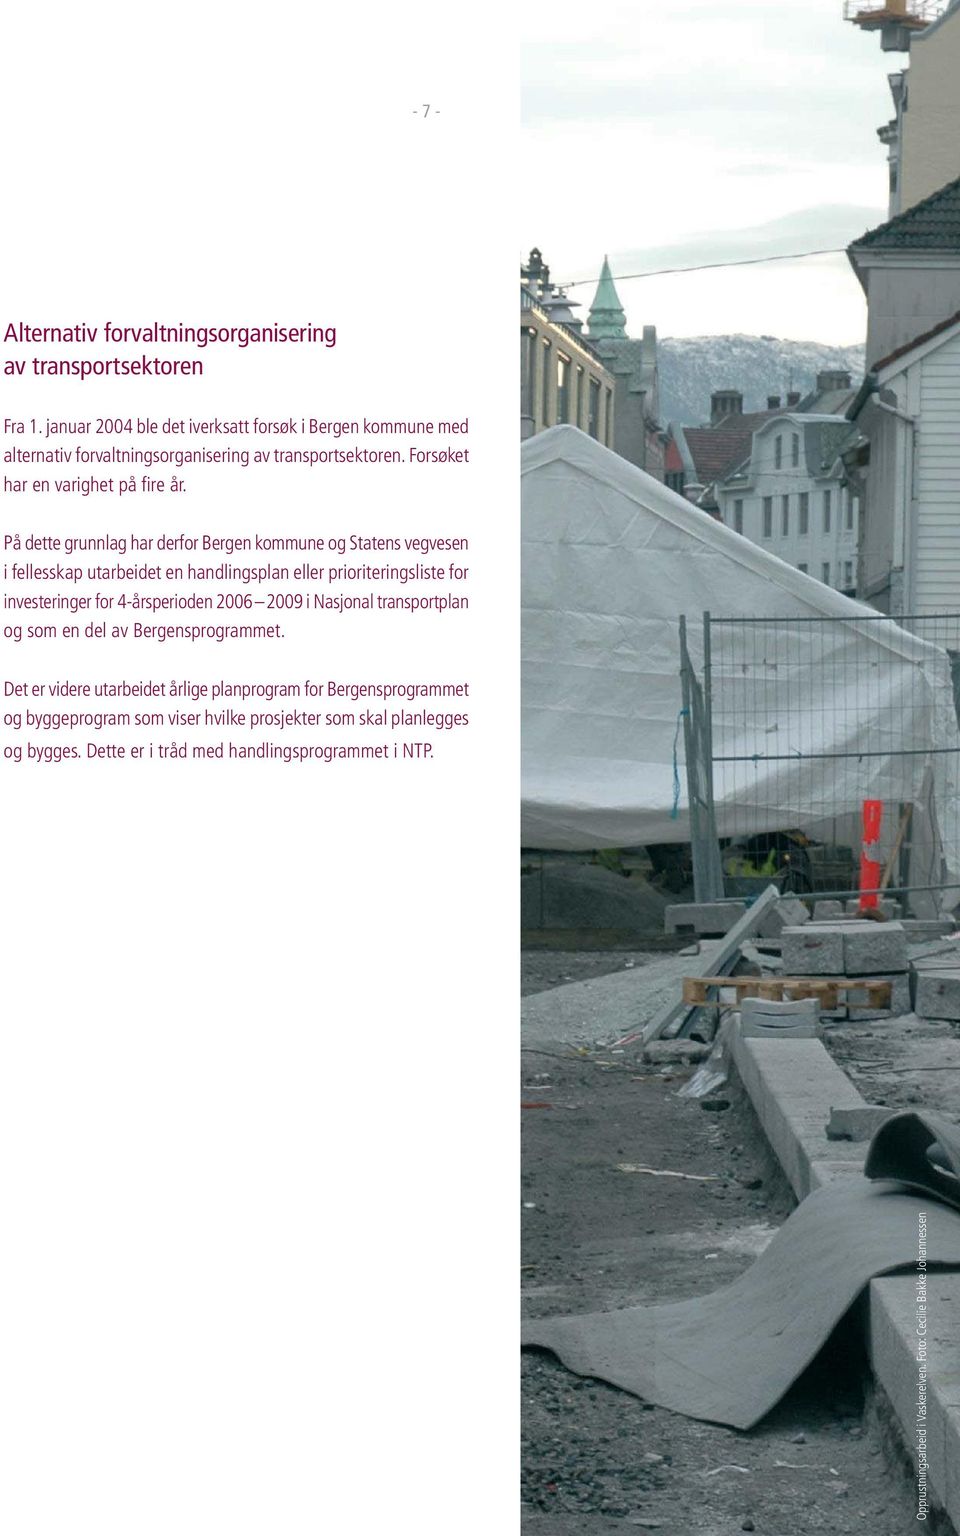 På dette grunnlag har derfor Bergen kommune og Statens vegvesen i fellesskap utarbeidet en handlingsplan eller prioriteringsliste for investeringer for 4-årsperioden 2006 2009 i